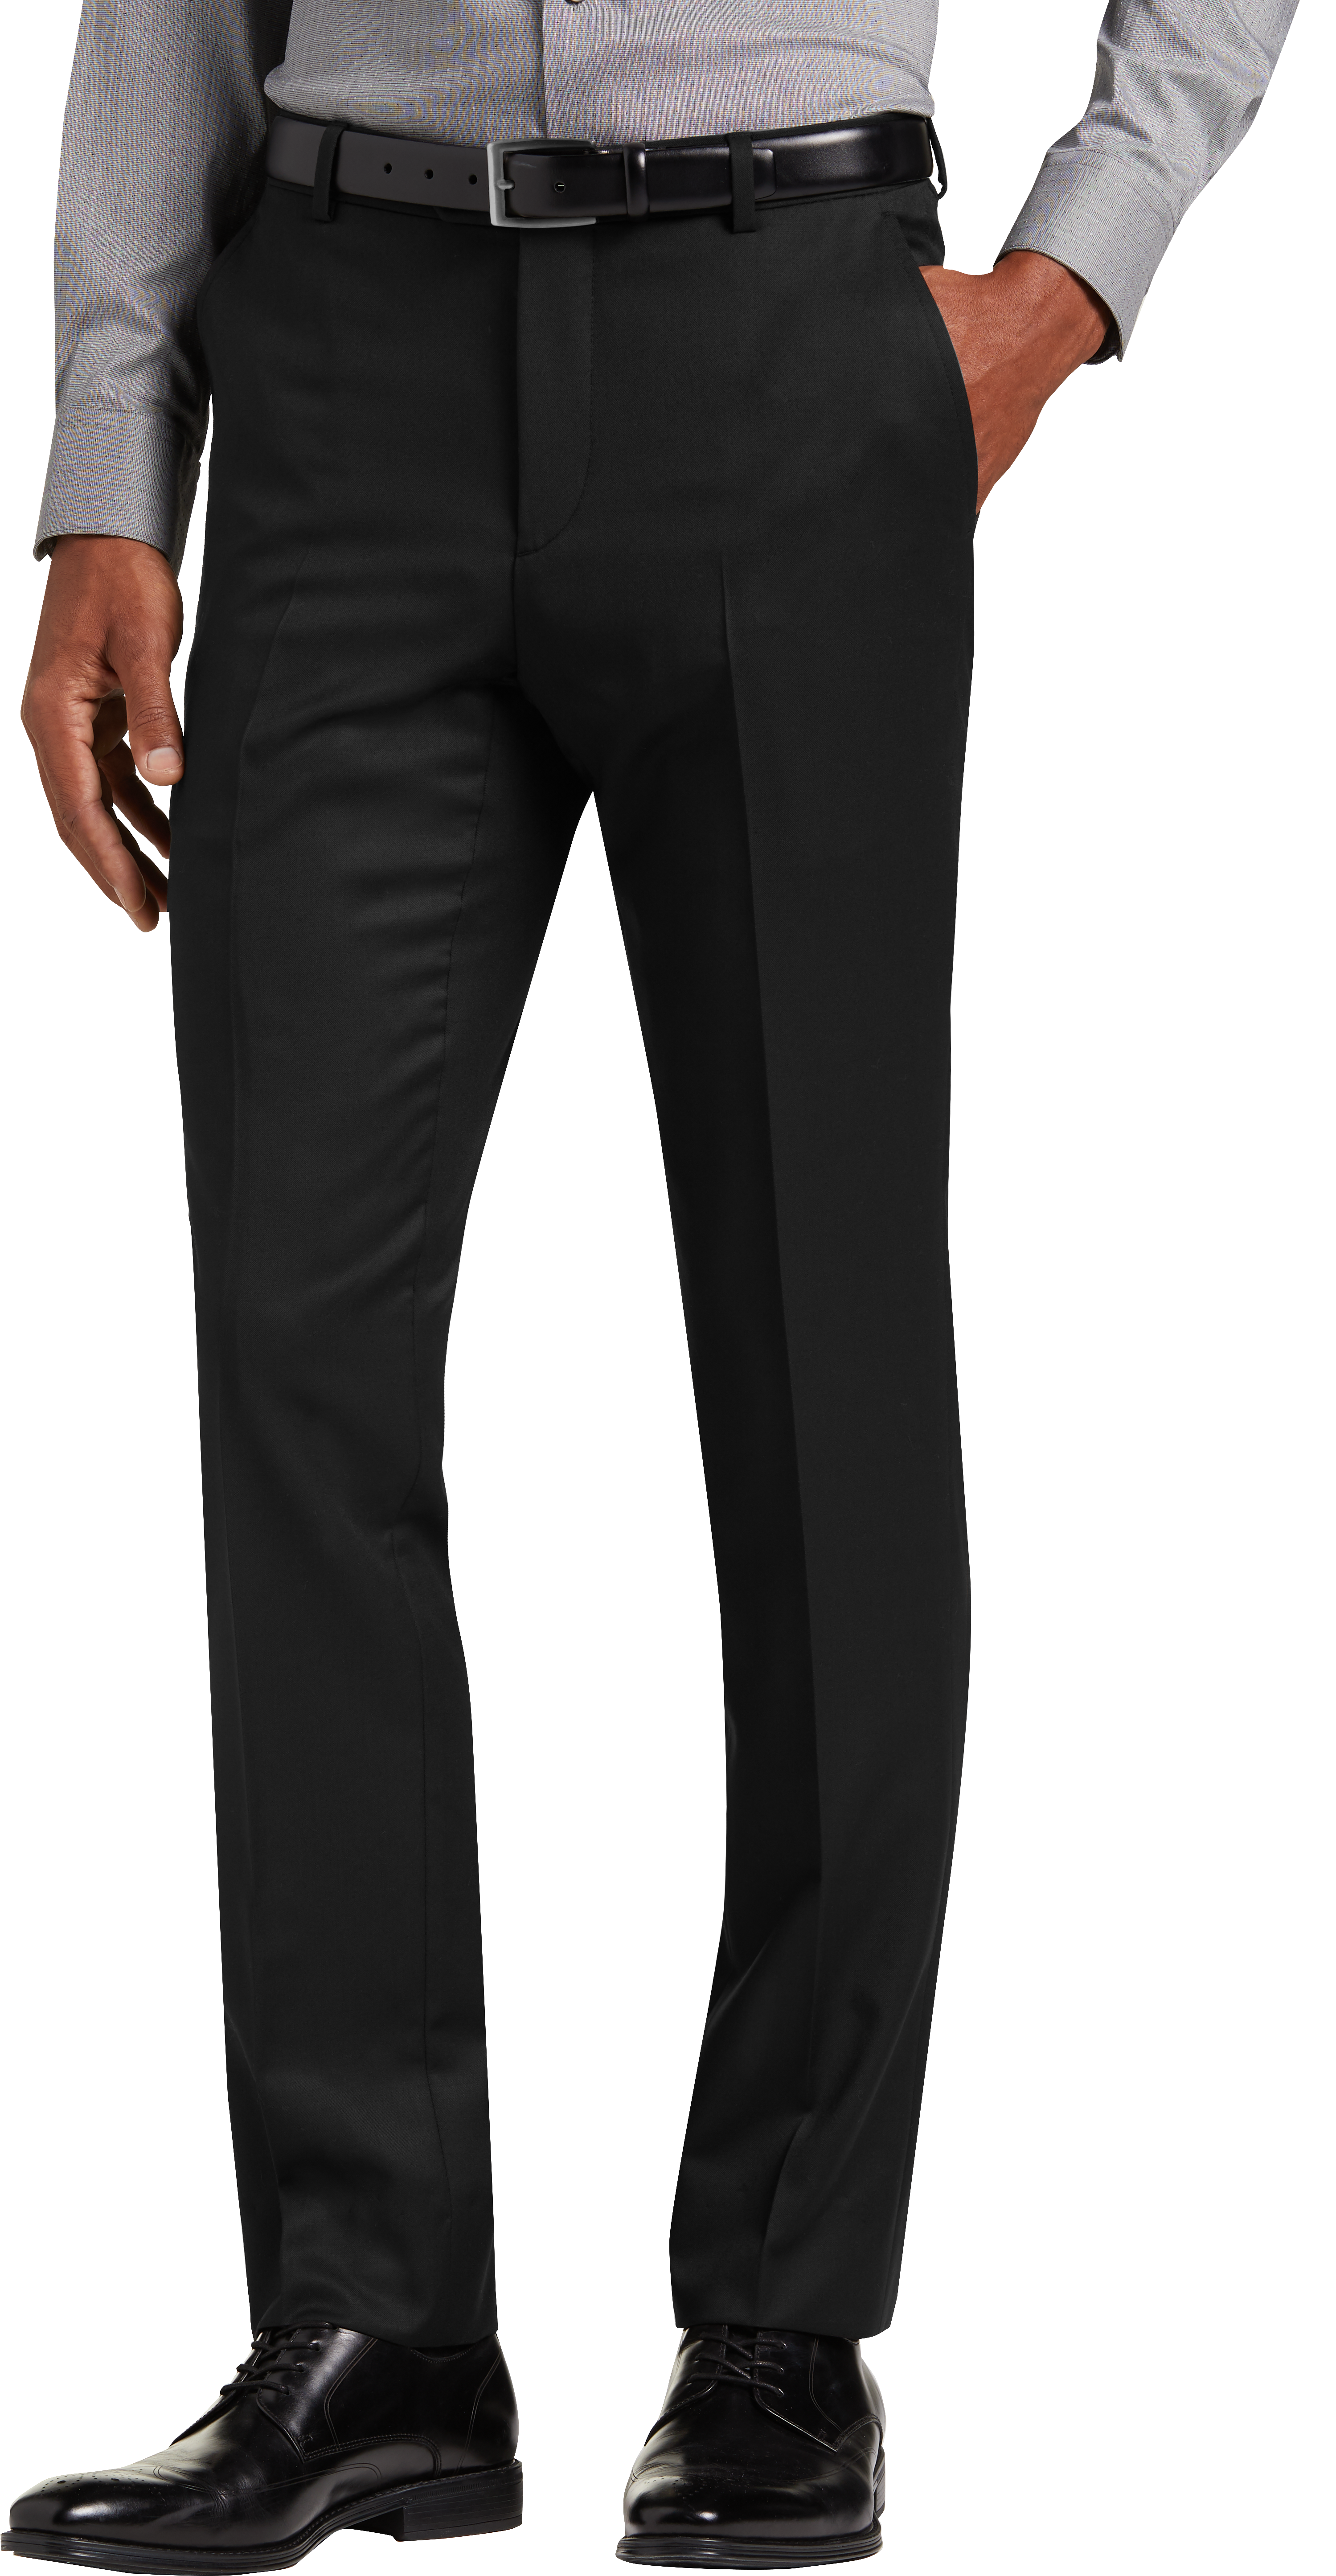 JOE Joseph Abboud Black Extreme Slim Fit Suit Separate Pant - Men's ...